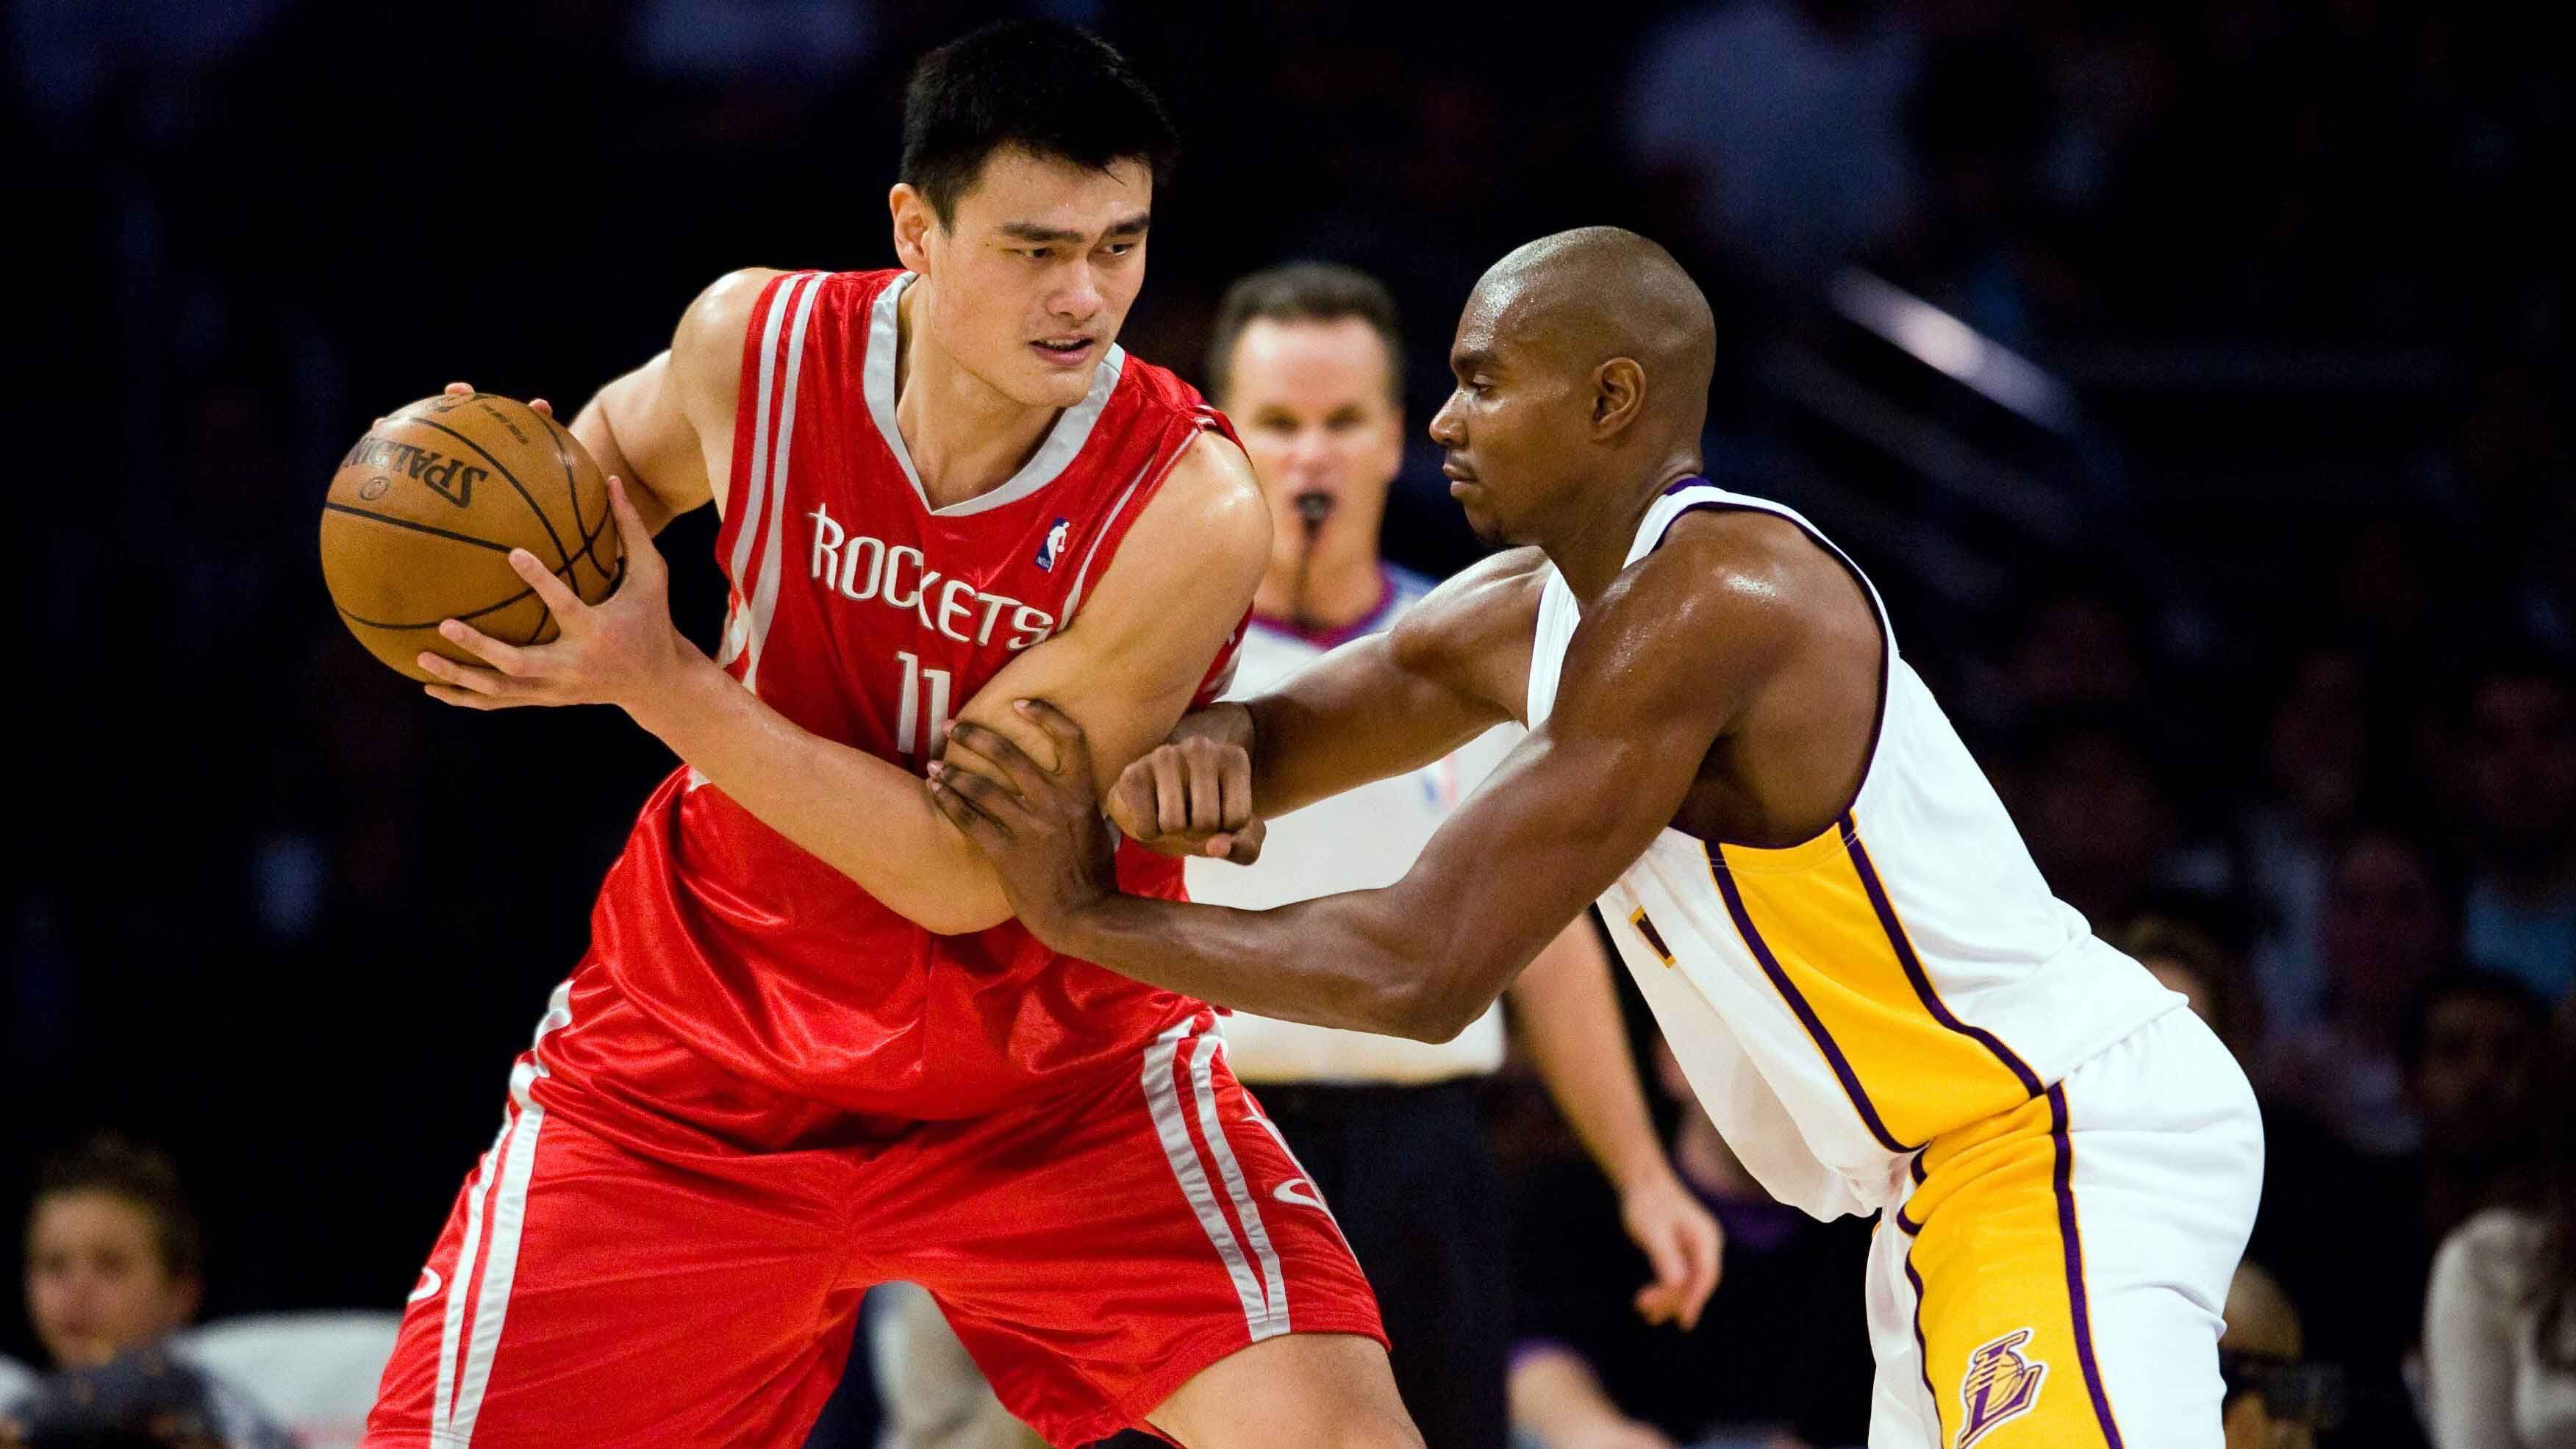 
                <strong>Platz 3 (geteilt): Yao Ming</strong><br>
                &#x2022; Größe: 2,29 Meter (US-Größe: 7 foot 6 inches)<br>&#x2022; Team: Houston Rockets (2002-2011)<br>&#x2022; Nationalität: China<br>&#x2022; Stats: 9.196 Punkte und 4.467 Rebounds in 481 Spielen<br>
              